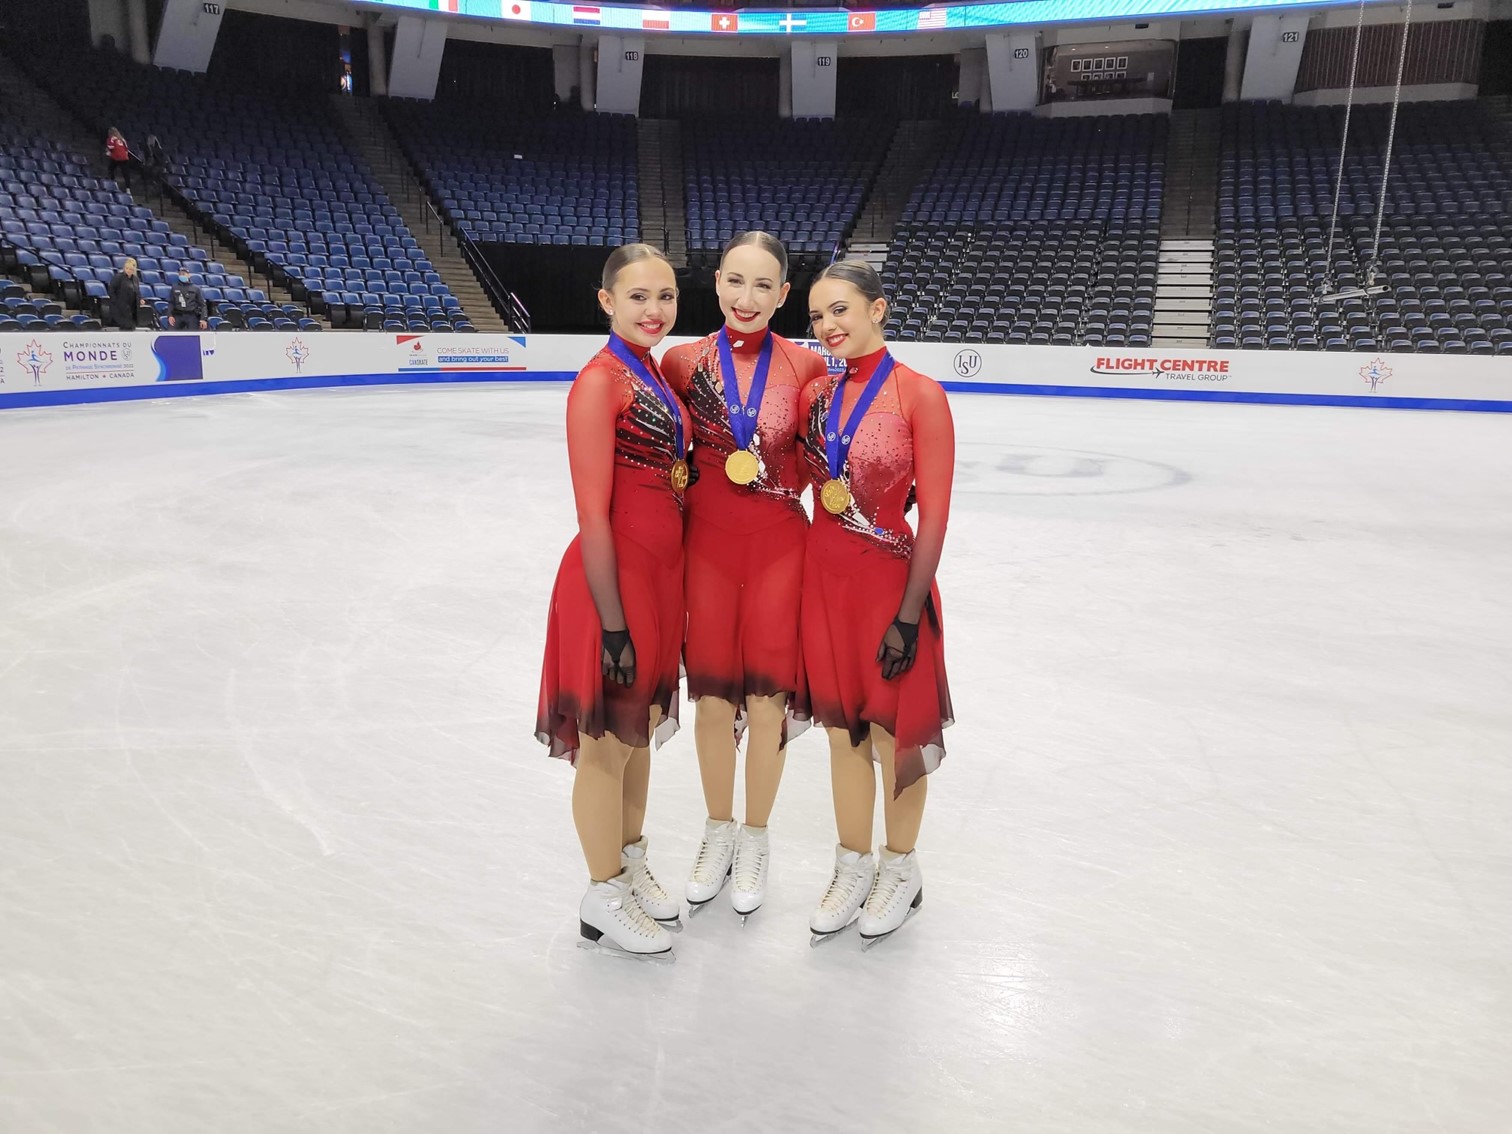 Trois Bouchervilloises remportent l’or aux Championnats du monde de patinage synchronisé de l’ISU